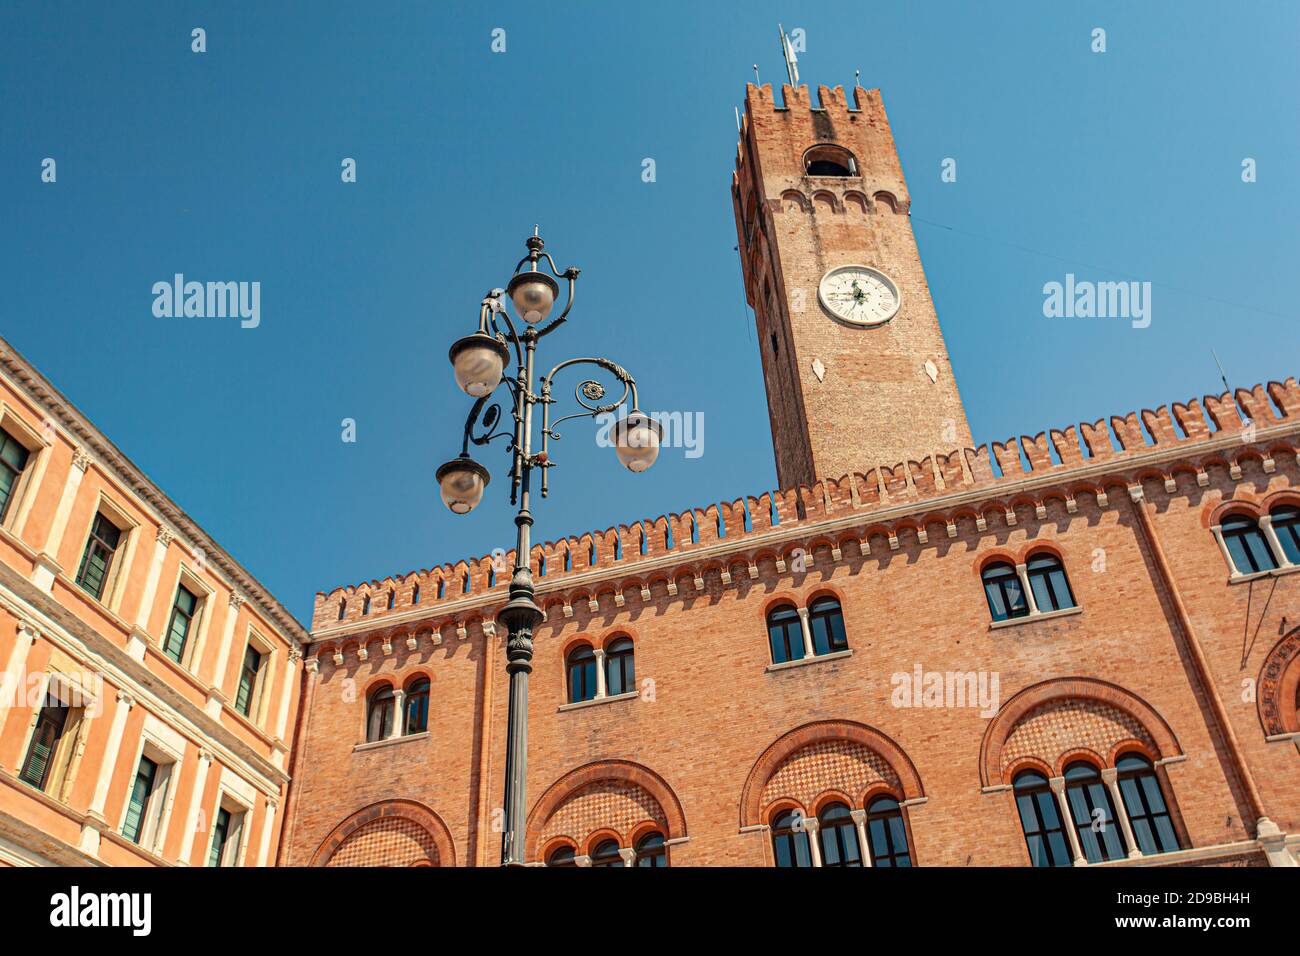 Tour de l'horloge ou Torre Civica en italien à Trévise in L'Italie dans un jour ensoleillé Banque D'Images